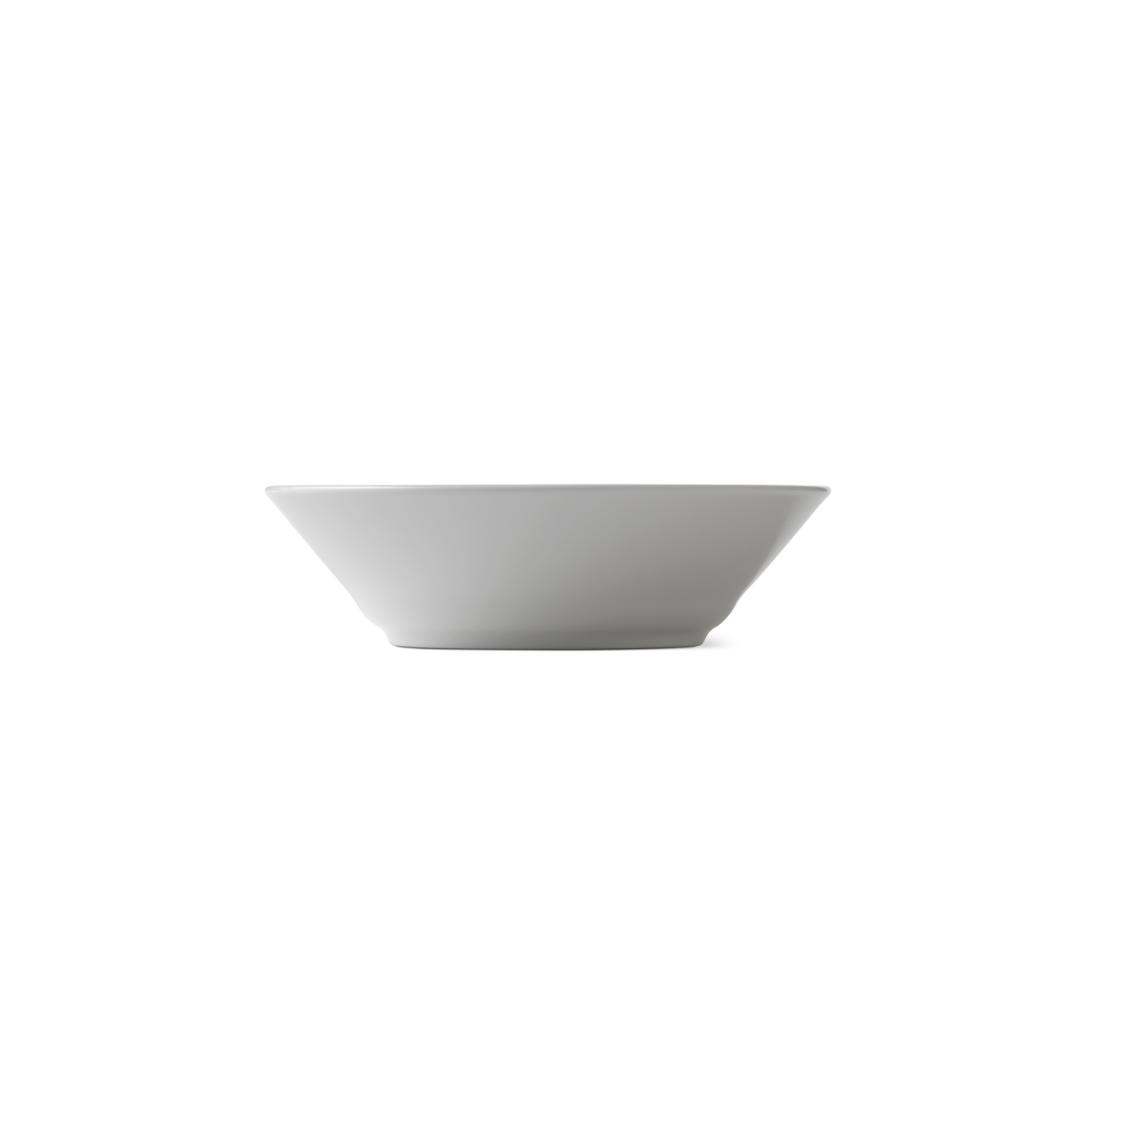 Royal Copenhagen White Fluled Deep Plate, 17 cm